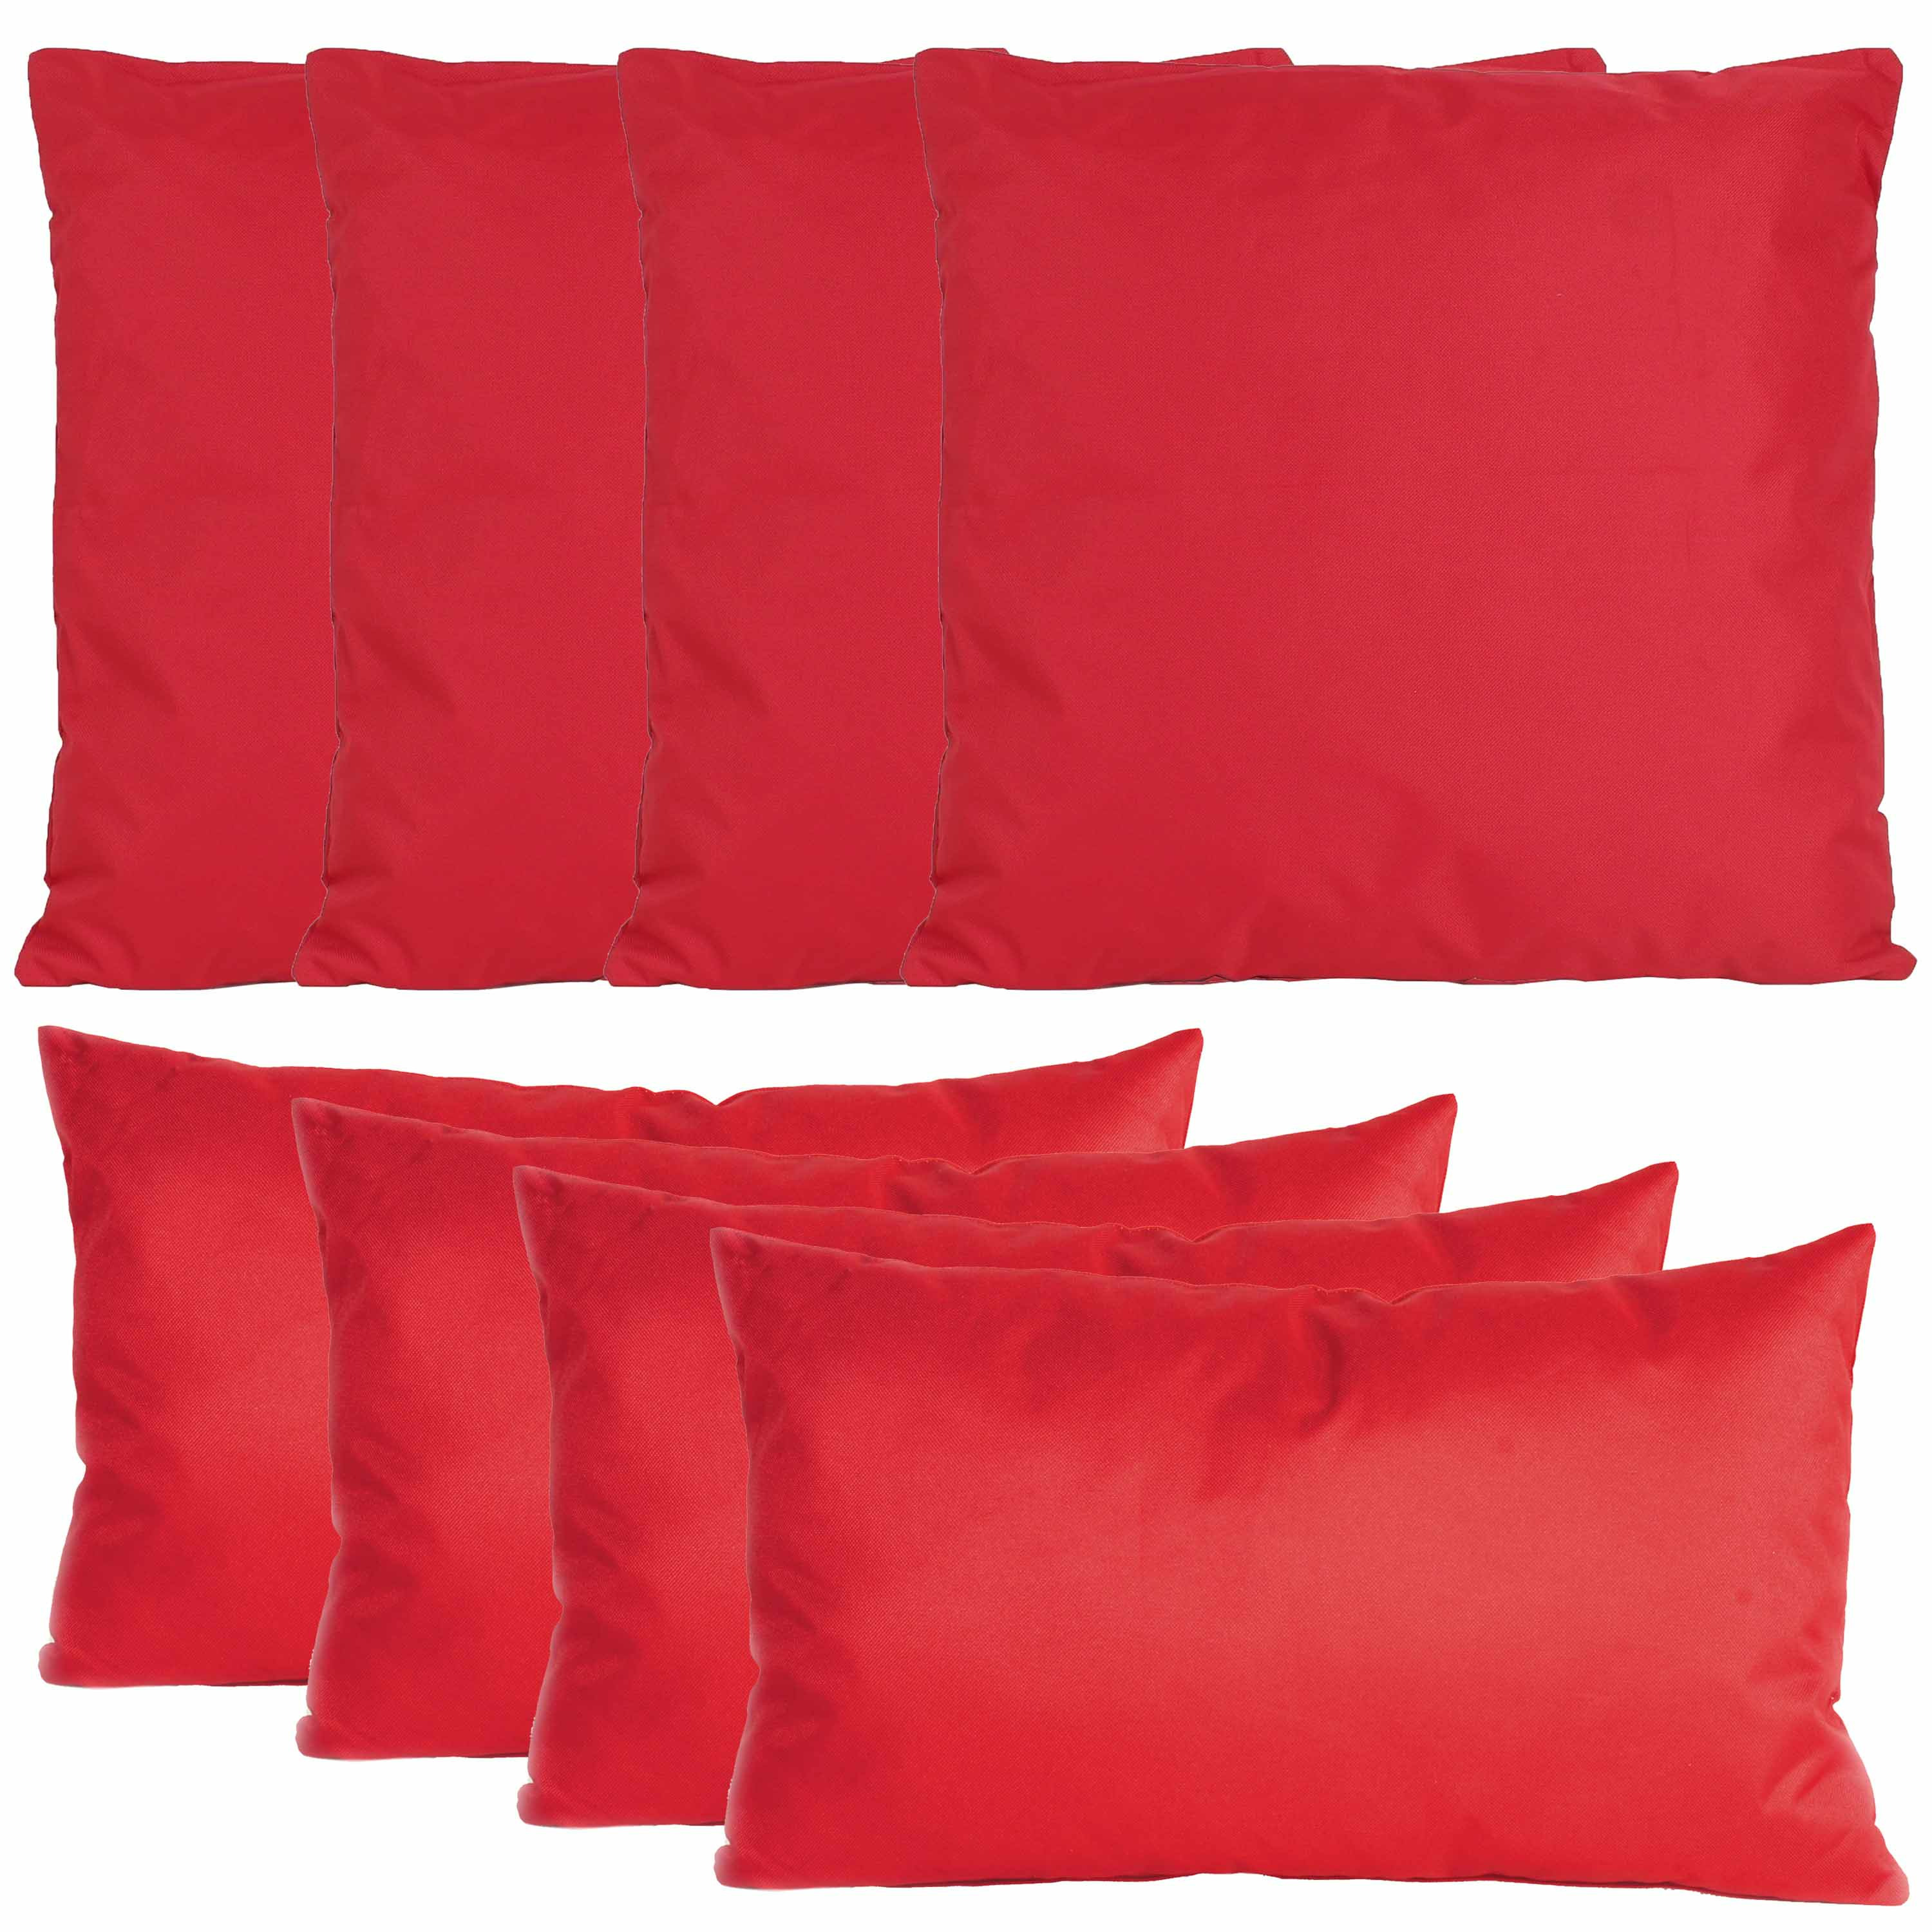 Bank-tuin kussens set binnen-buiten 8x stuks rood In 2 formaten laag-hoog